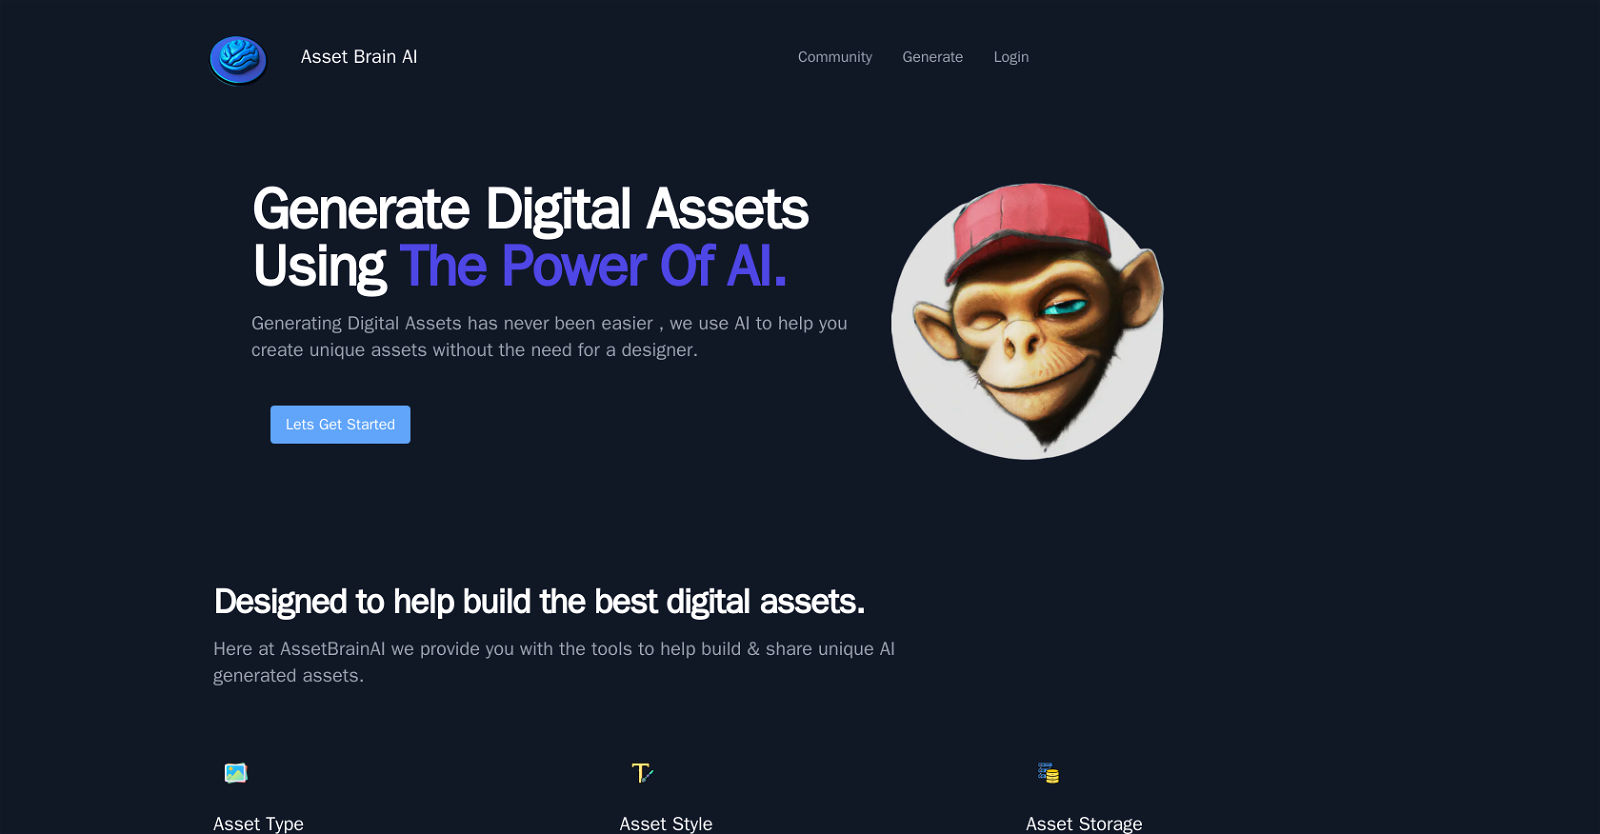 Asset Brain AI website